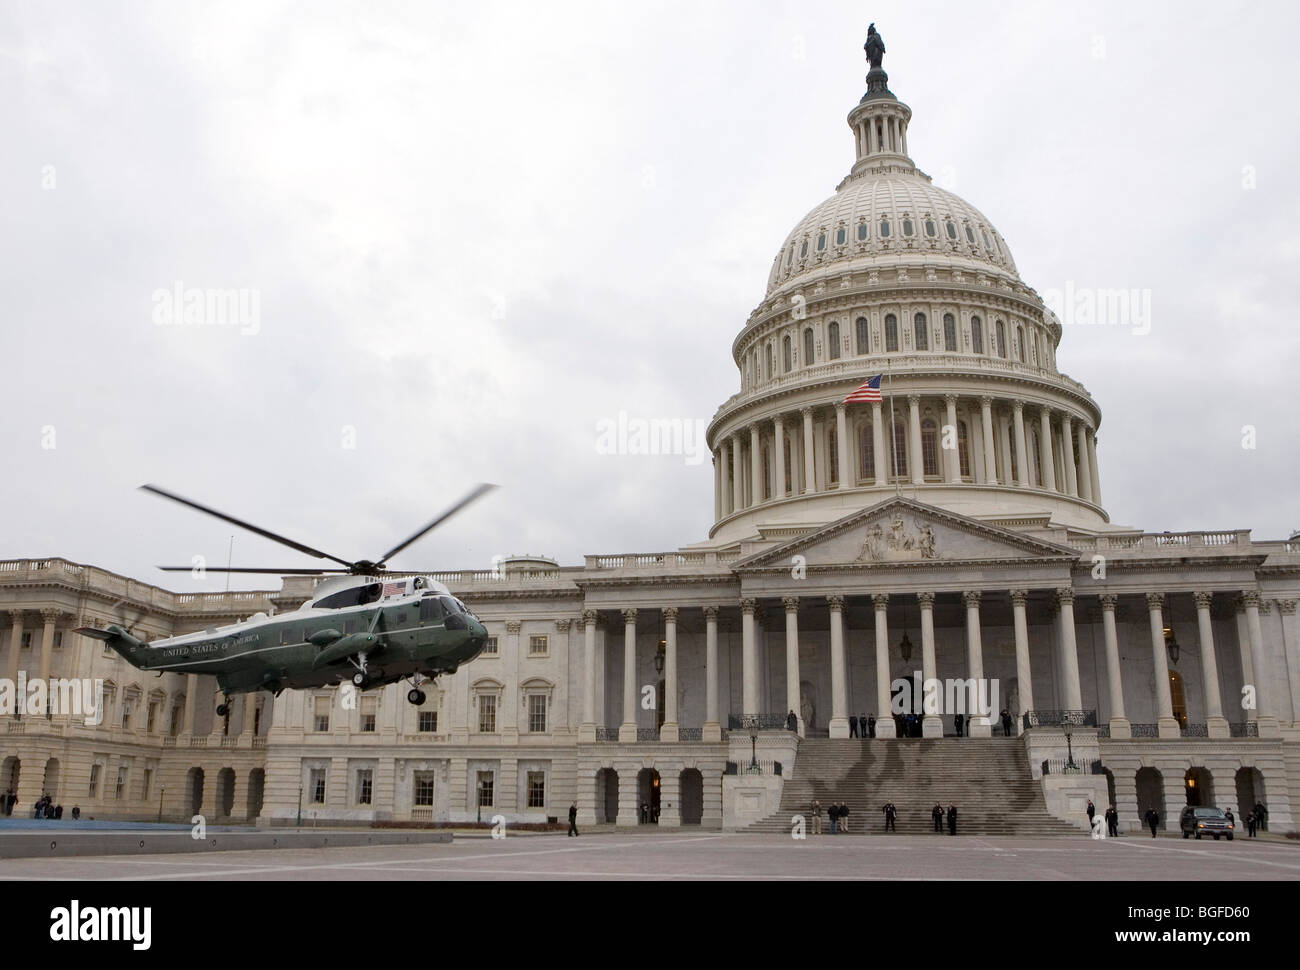 Un helicóptero Marine One prácticas un aterrizaje en el Edificio del Capitolio de los Estados Unidos. Foto de stock